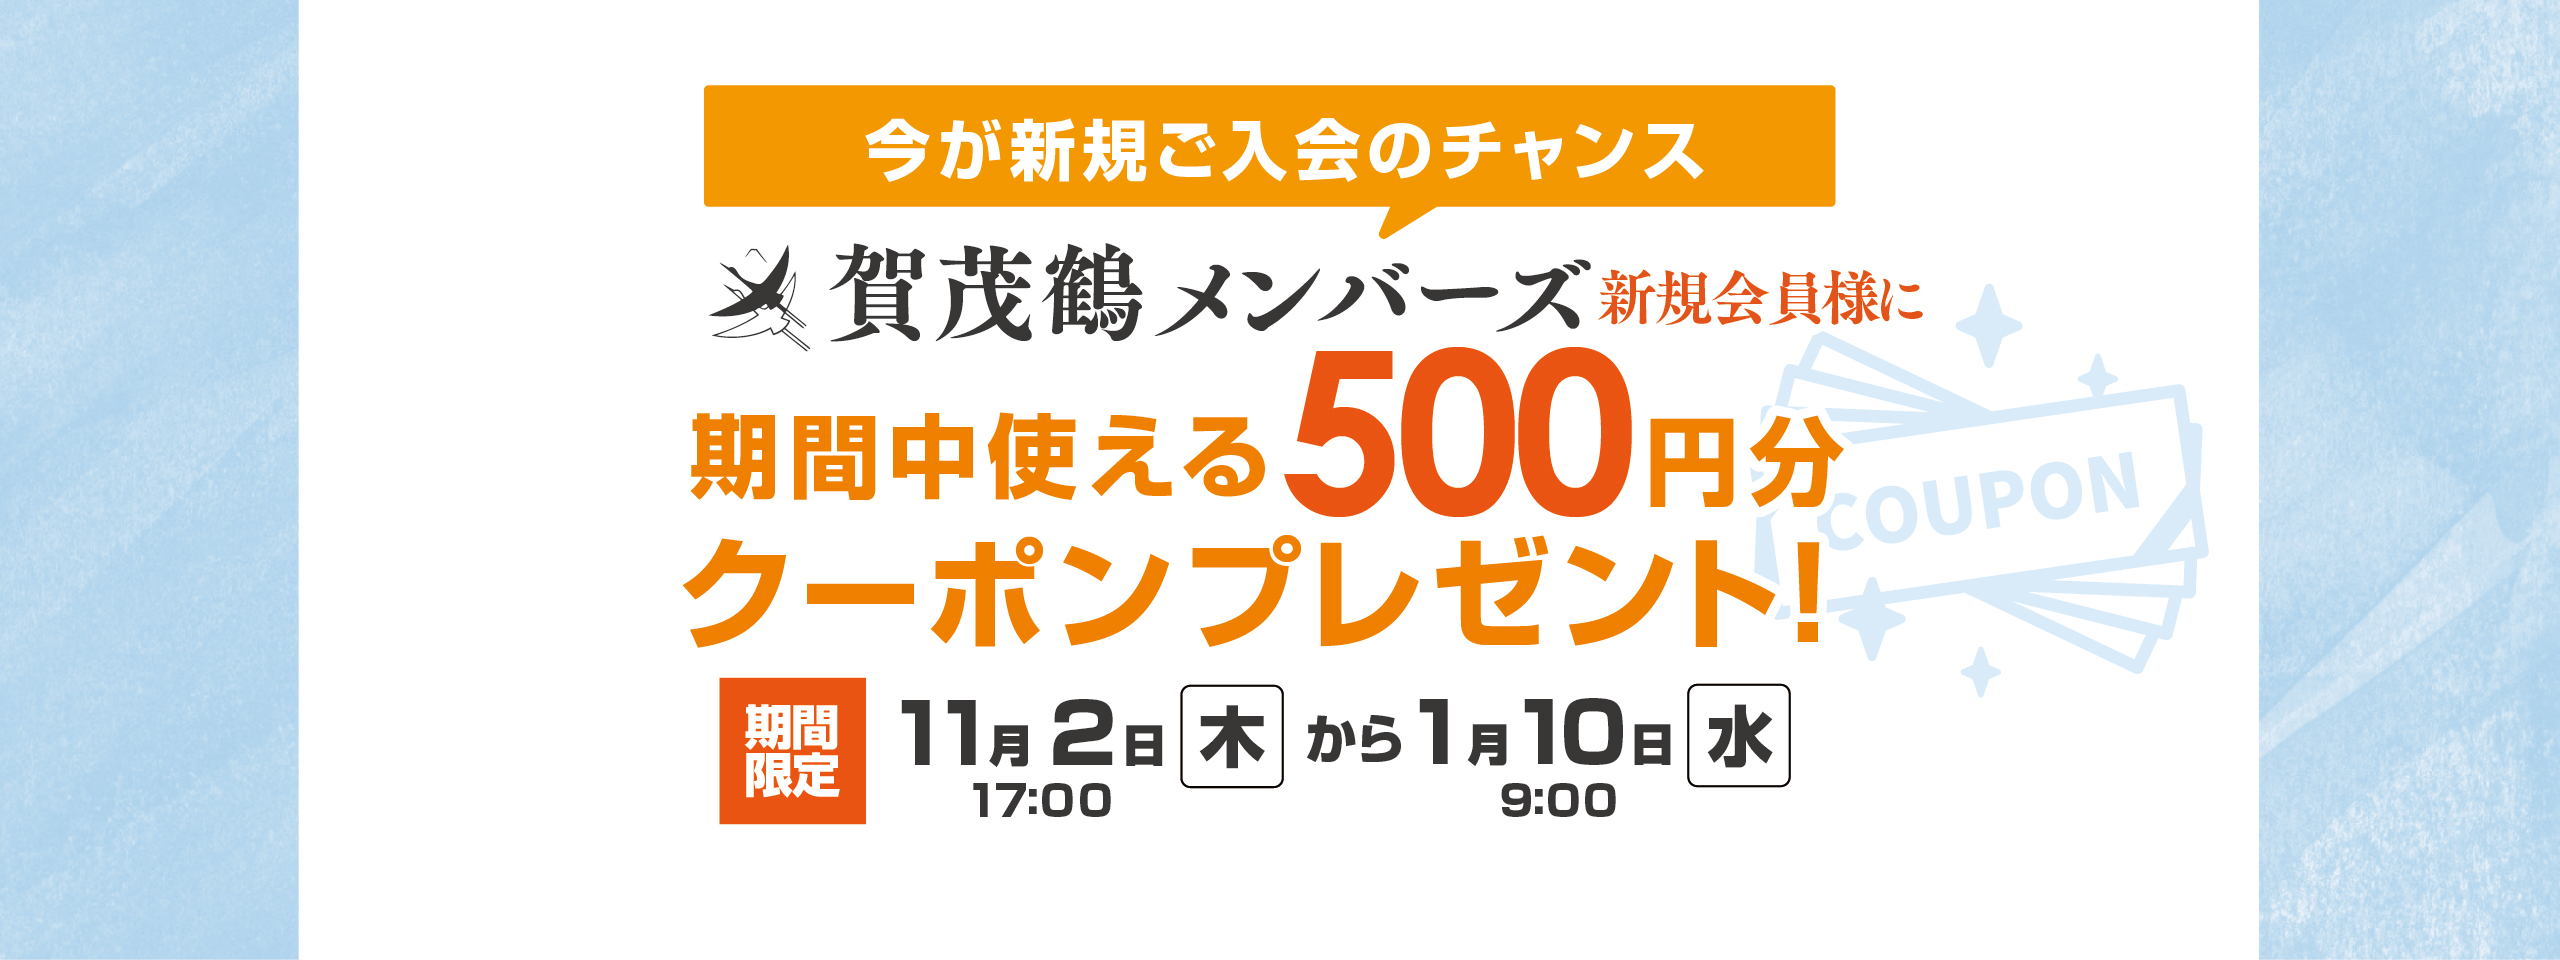 「新規会員登録で500円クーポンプレゼント」キャンペーン